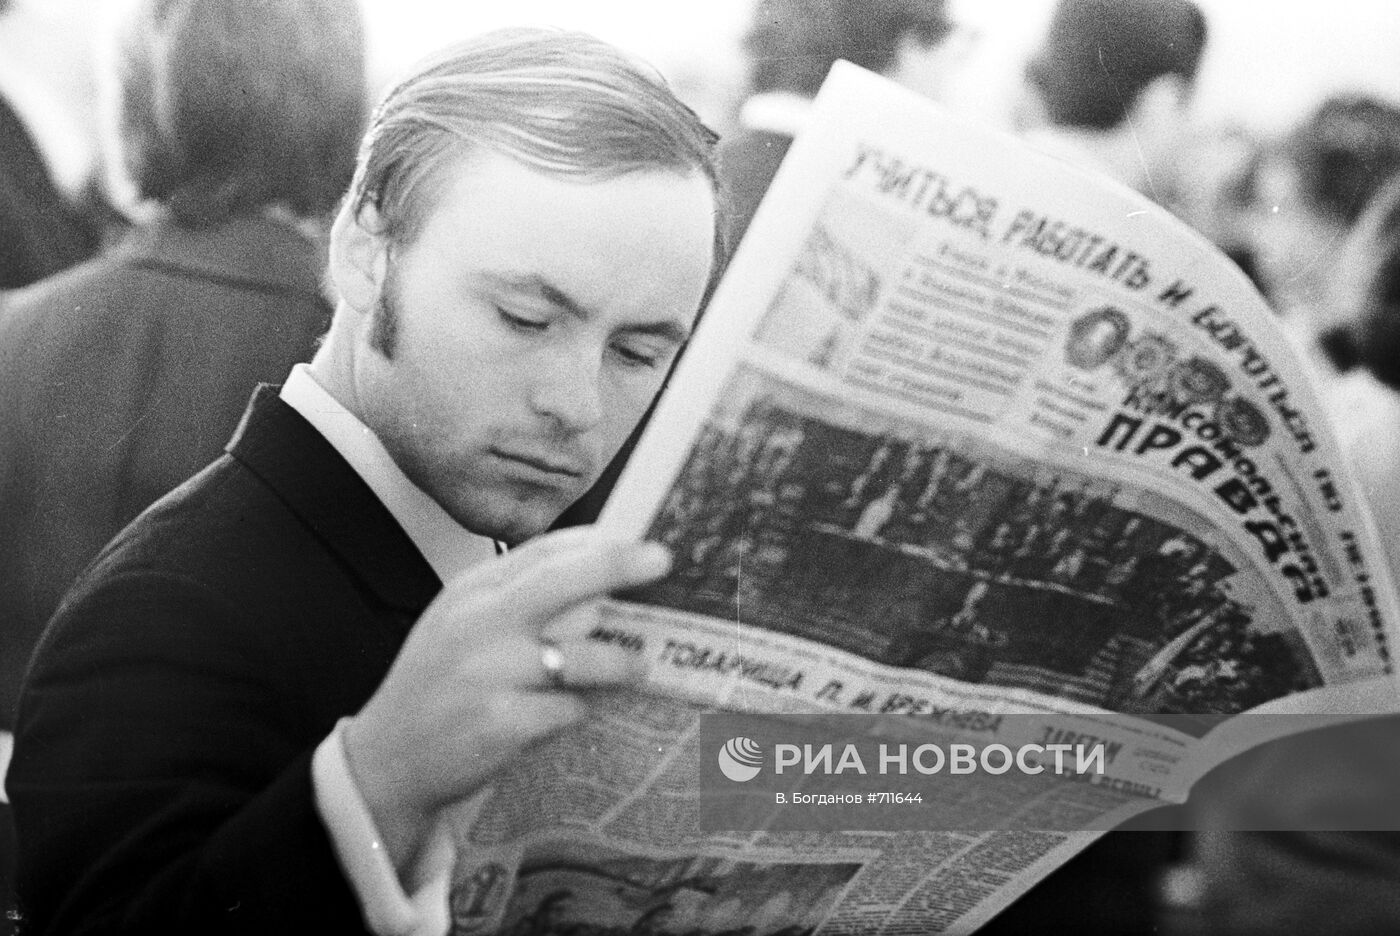 Правда риа. Читает газету правда. Рабочий читает газету правда. Человек читает Комсомольскую правду. Рабочие читают правду.